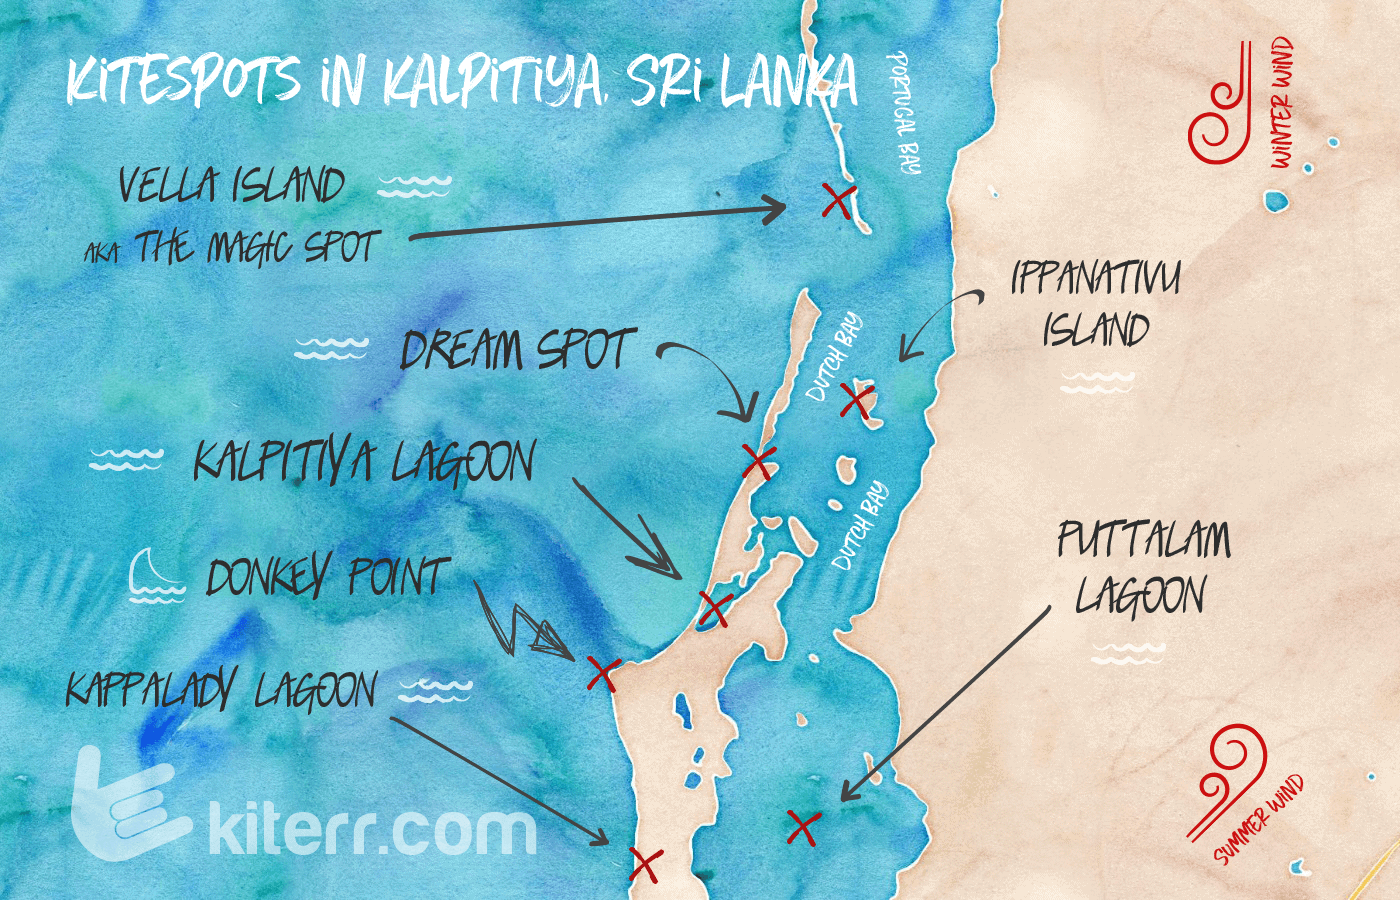 The best kitesurfing spots in Kalpitiya, Sri Lanka - Spot guide & Map // Kiterr.com